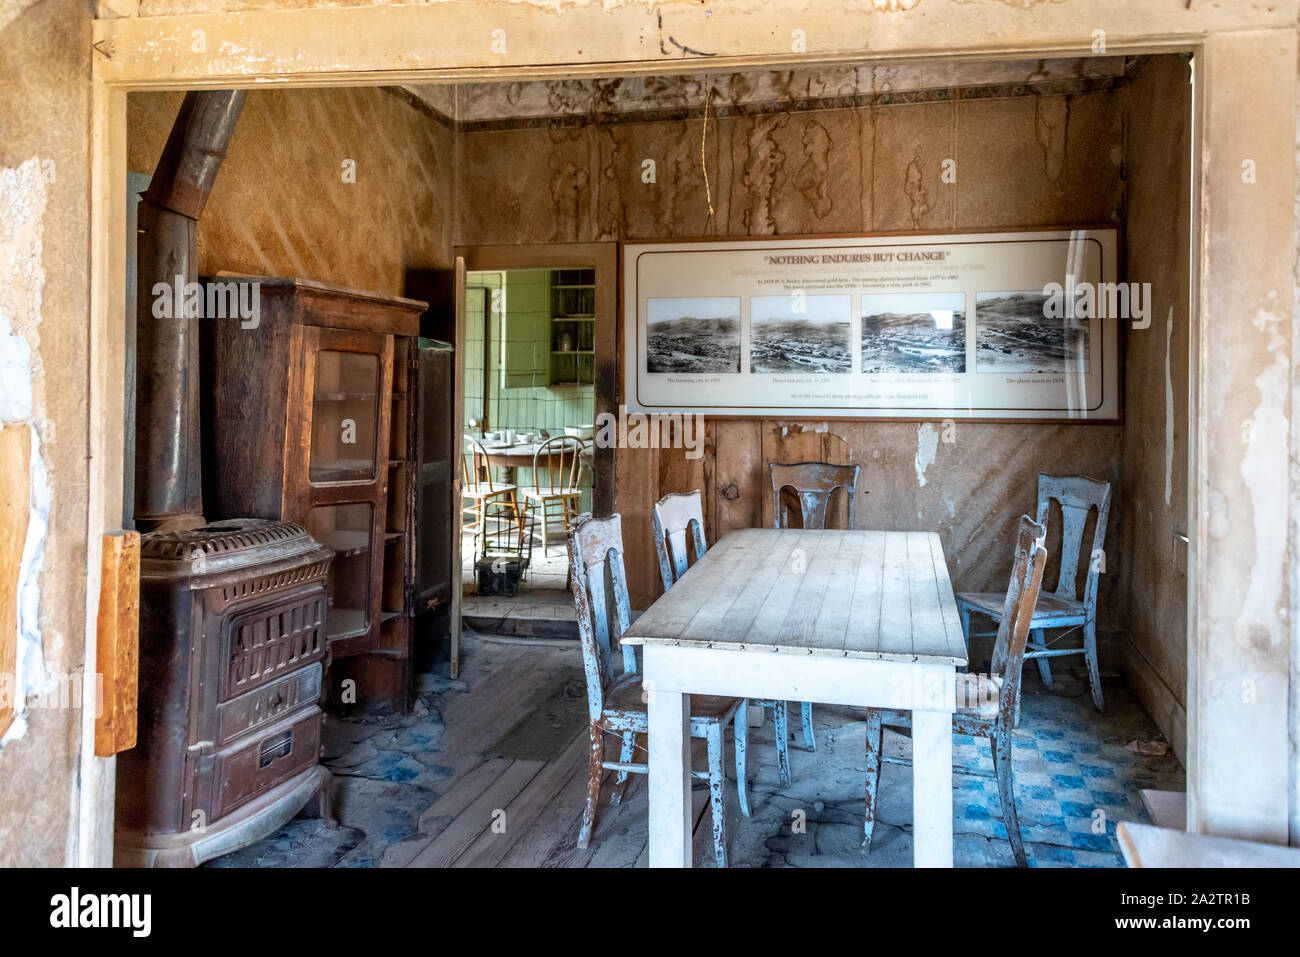 Innerhalb der Tom Miller Haus in Bodie. Blick auf den Speisesaal mit Herd und Tisch, in der Küche durch die Tür sichtbar. Stockfoto